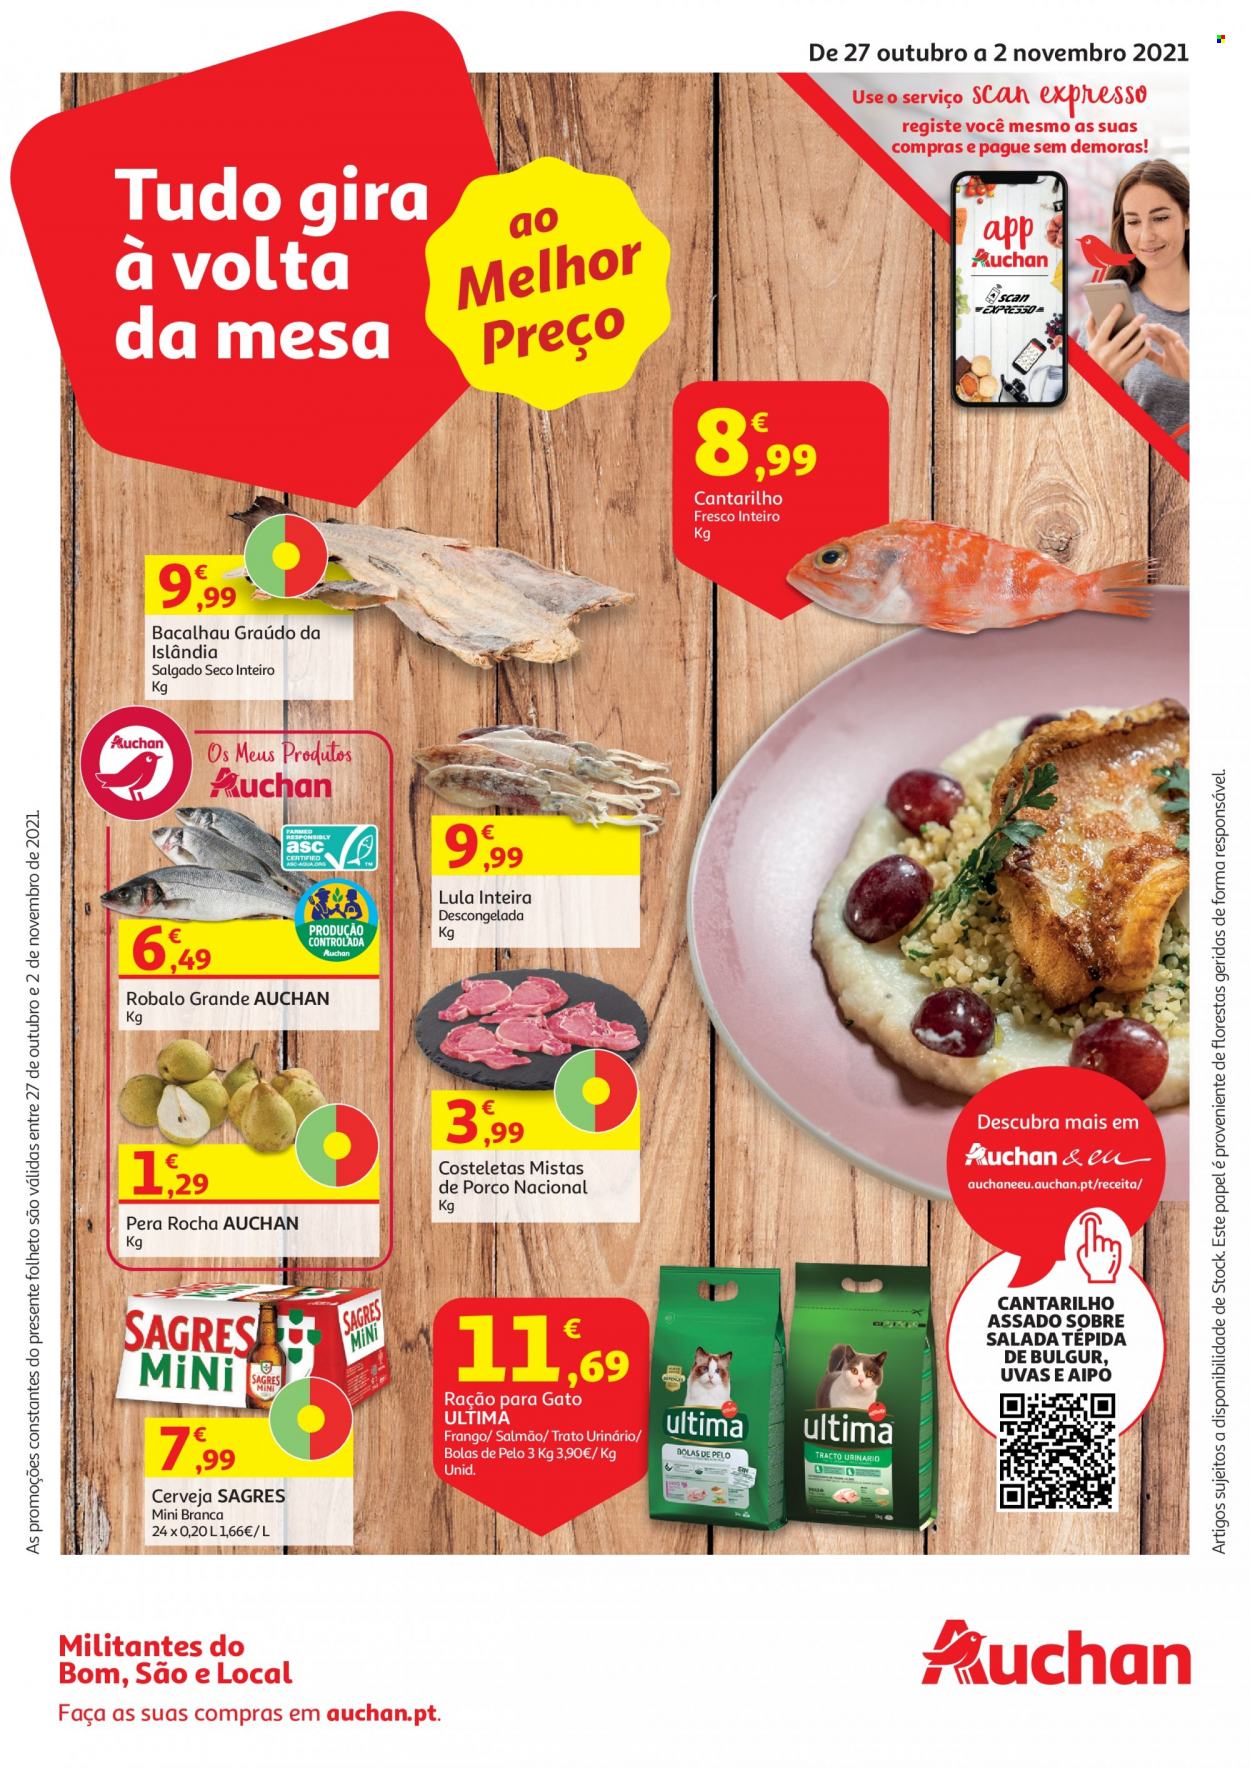 Folheto Auchan - 27.10.2021 - 2.11.2021 - Produtos em promoção - Sagres, cerveja, pera, uva, bacalhau, lula, robalo, alimentos para gatos, ração. Página 1.